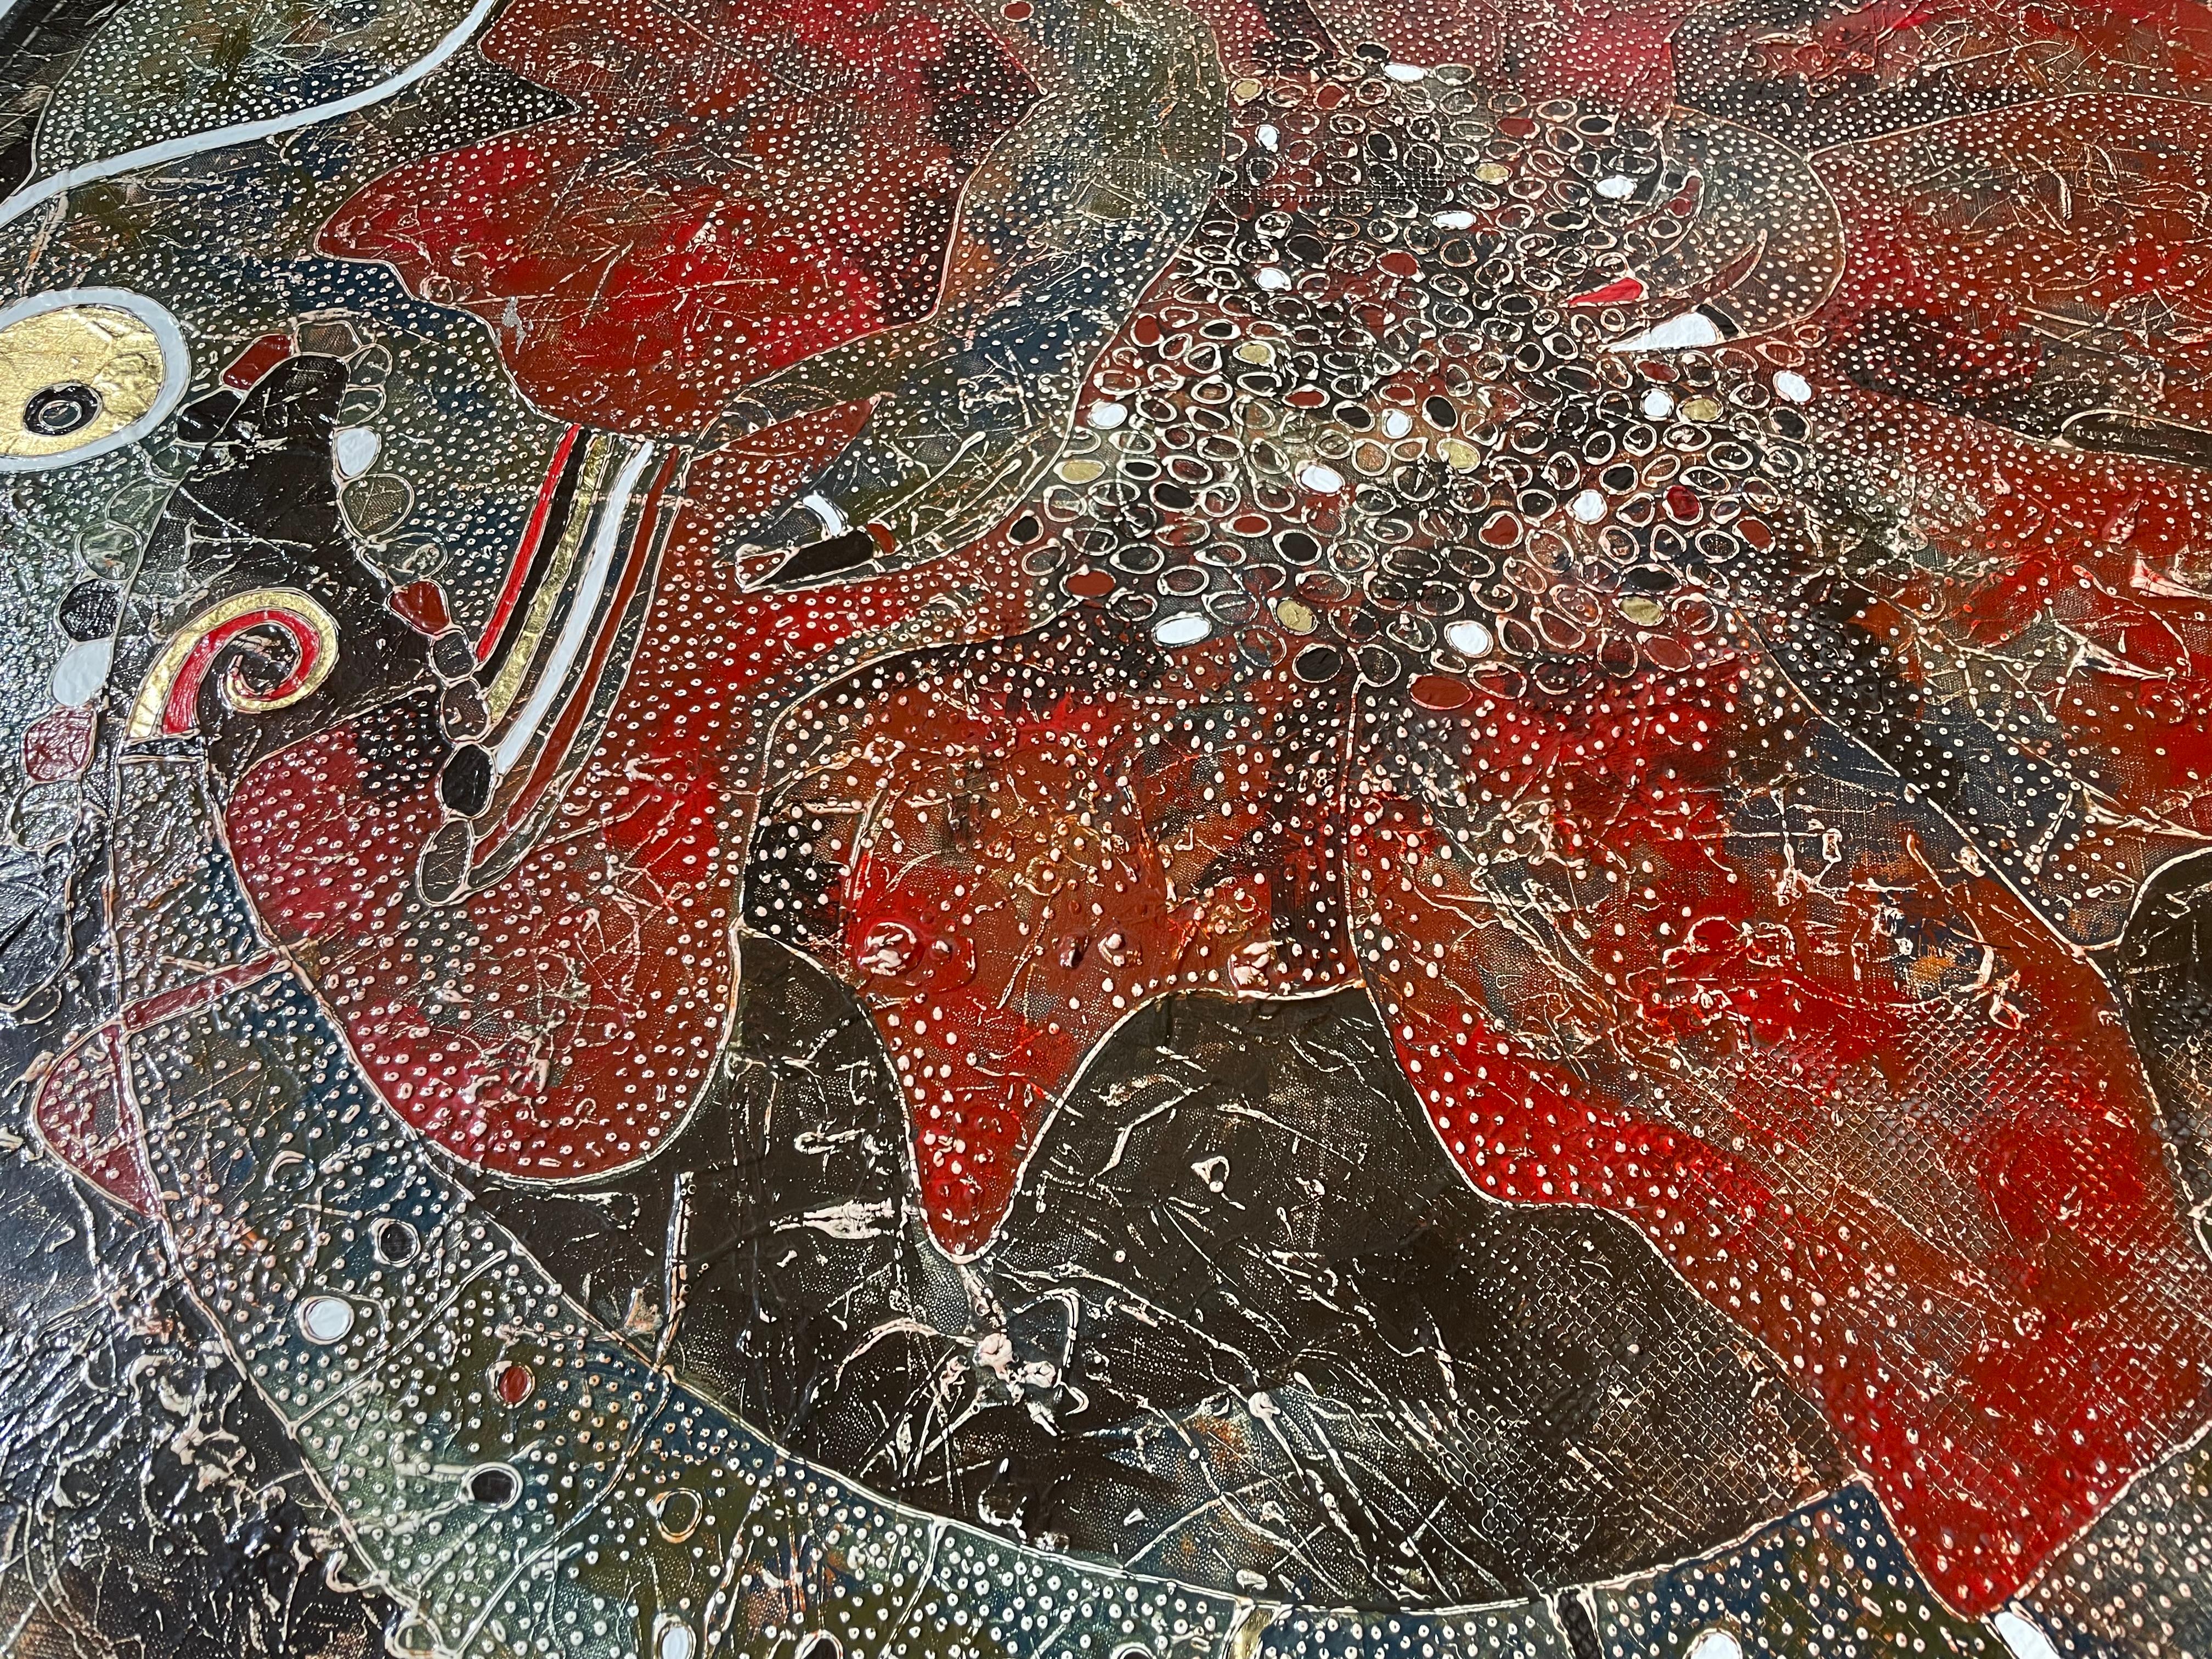 Die Farbe wird in der Technik des Autors der Malerei von Vasily Zianko basierte Acrylmalerei auf Leinwand mit einer Vielzahl von Texturen, Wäschen, die feinste Lasur, volumetrische Konturen gemacht.